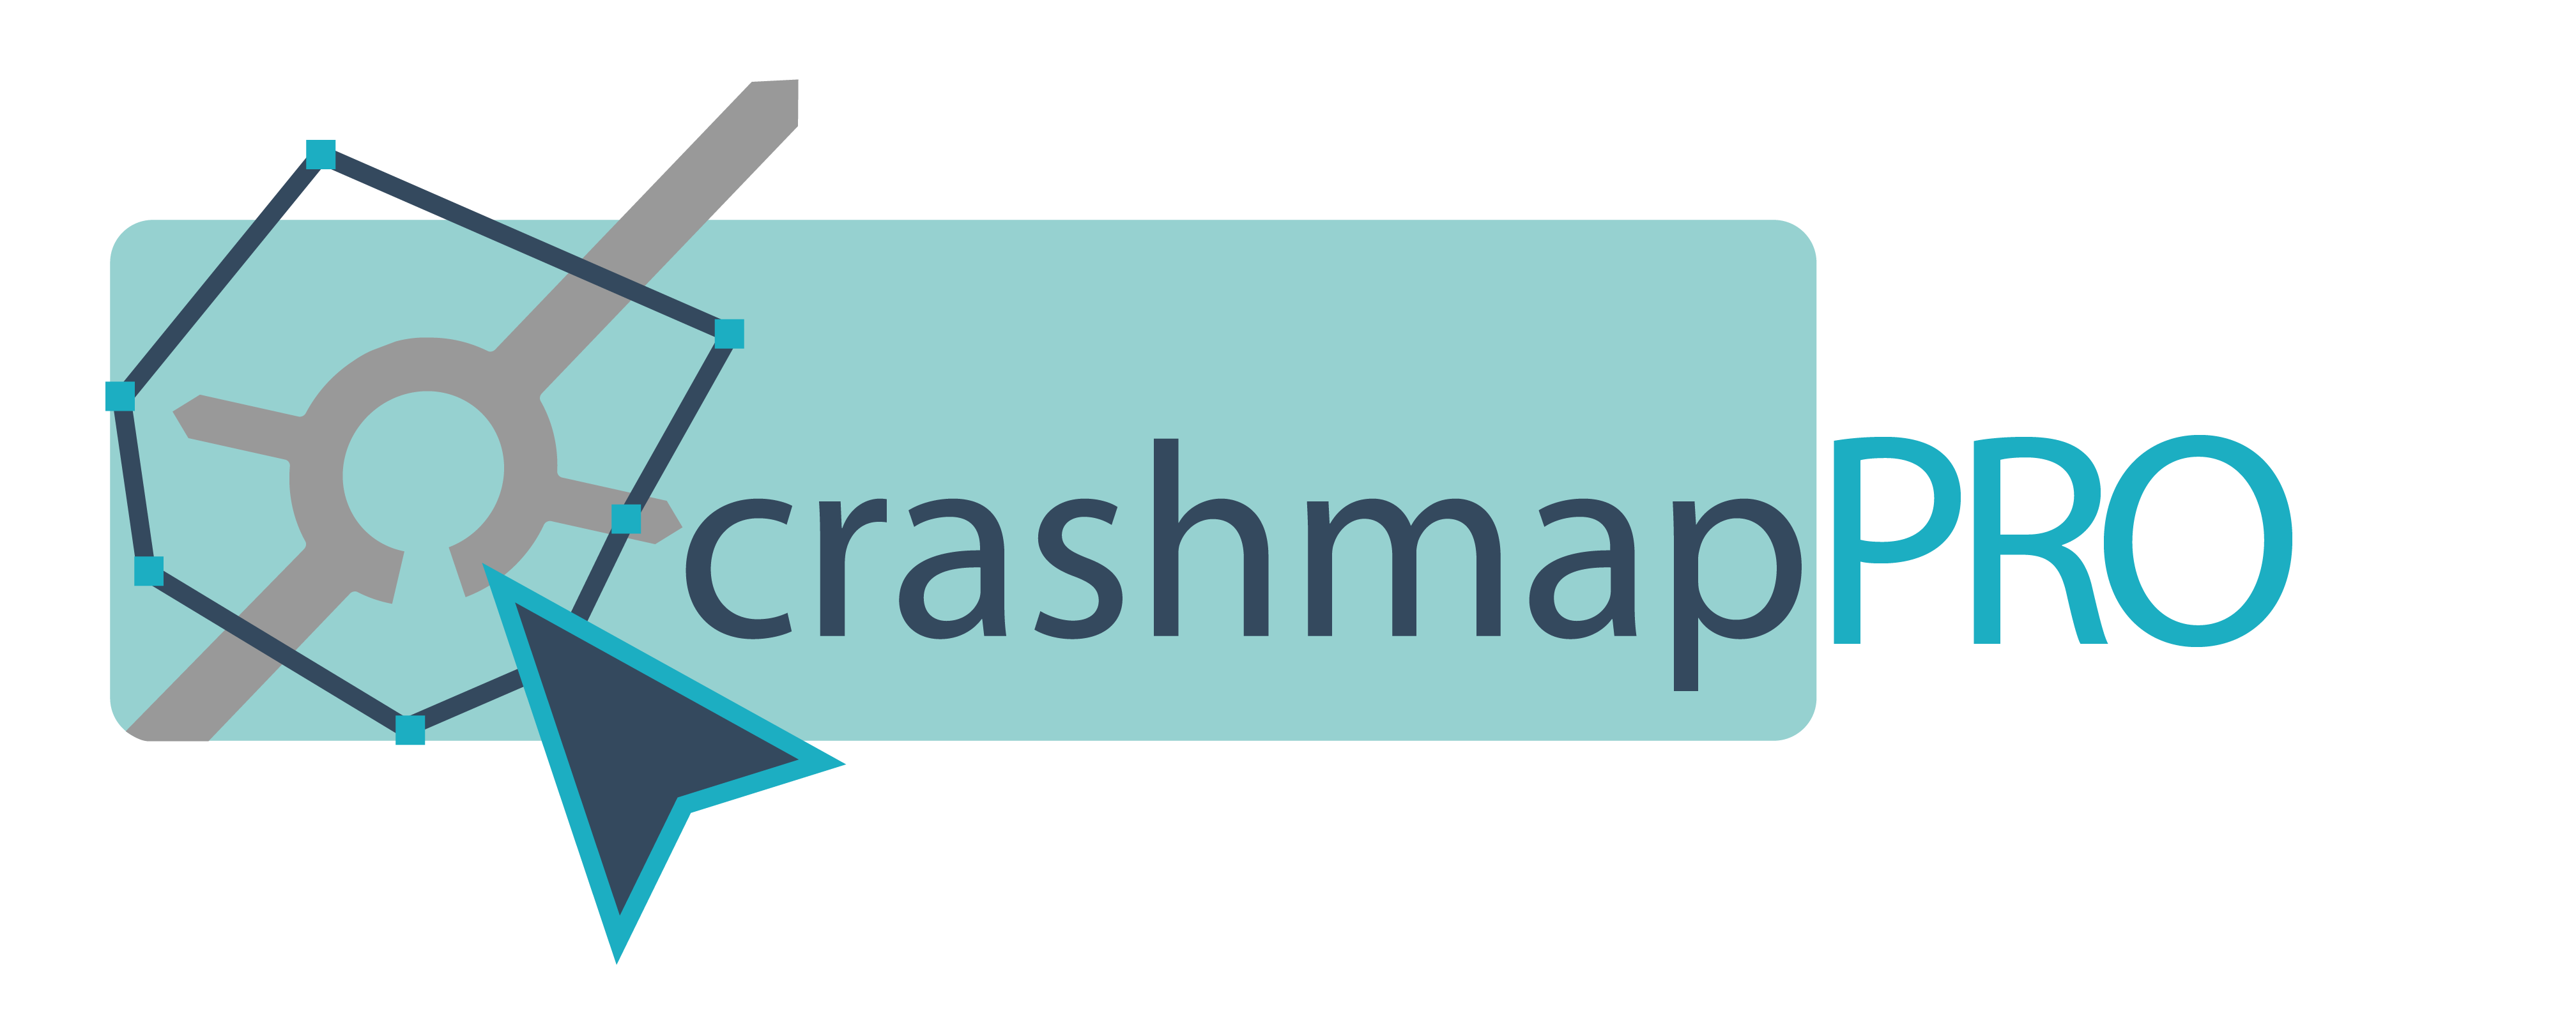 crashmap_PRO_logo_2018-03